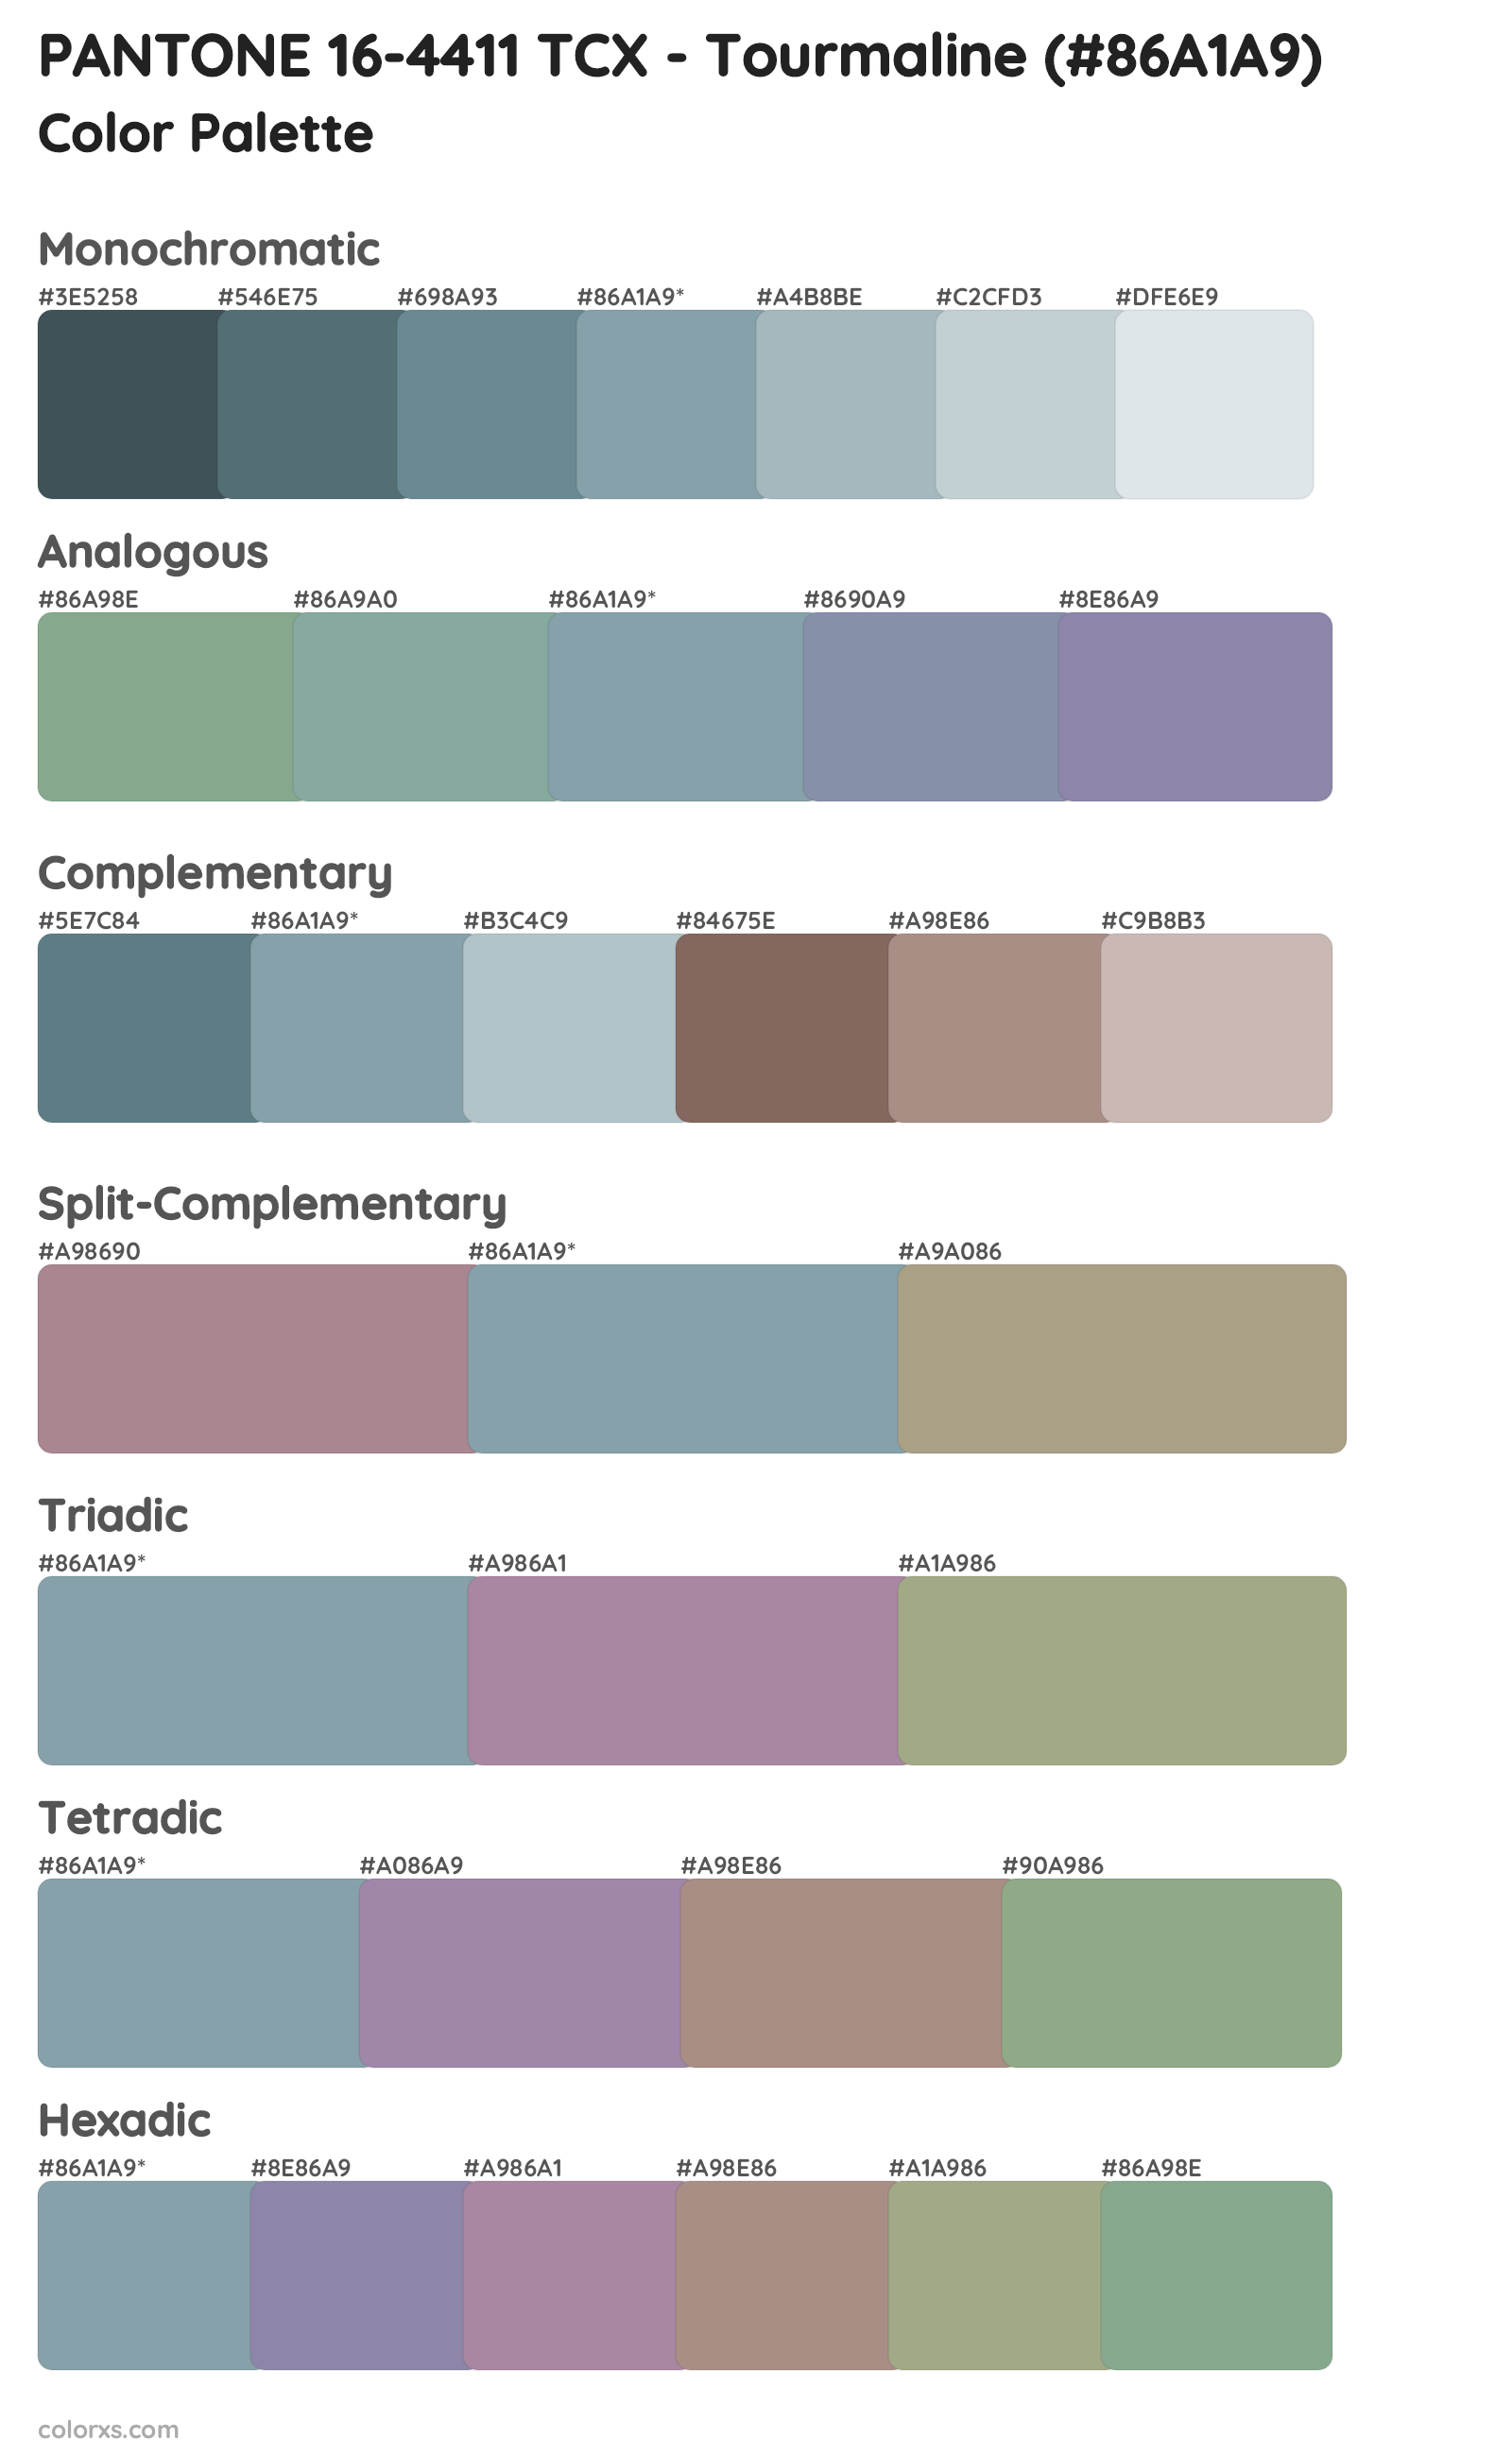 PANTONE 16-4411 TCX - Tourmaline Color Scheme Palettes